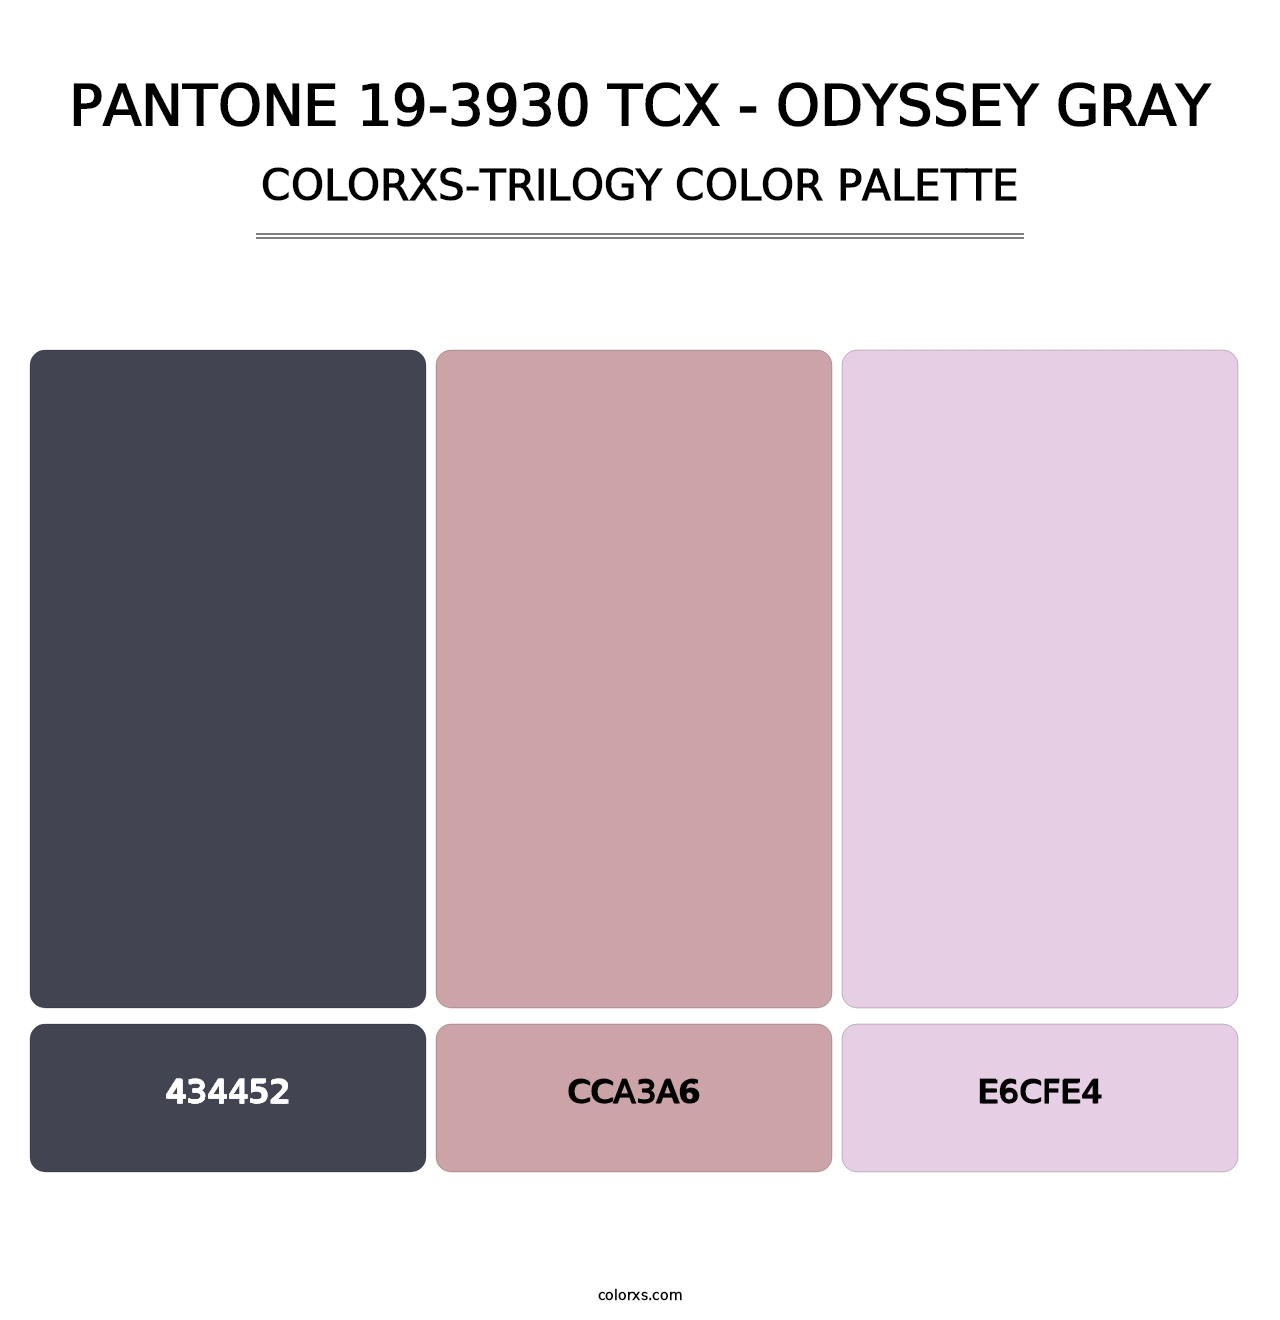 PANTONE 19-3930 TCX - Odyssey Gray - Colorxs Trilogy Palette